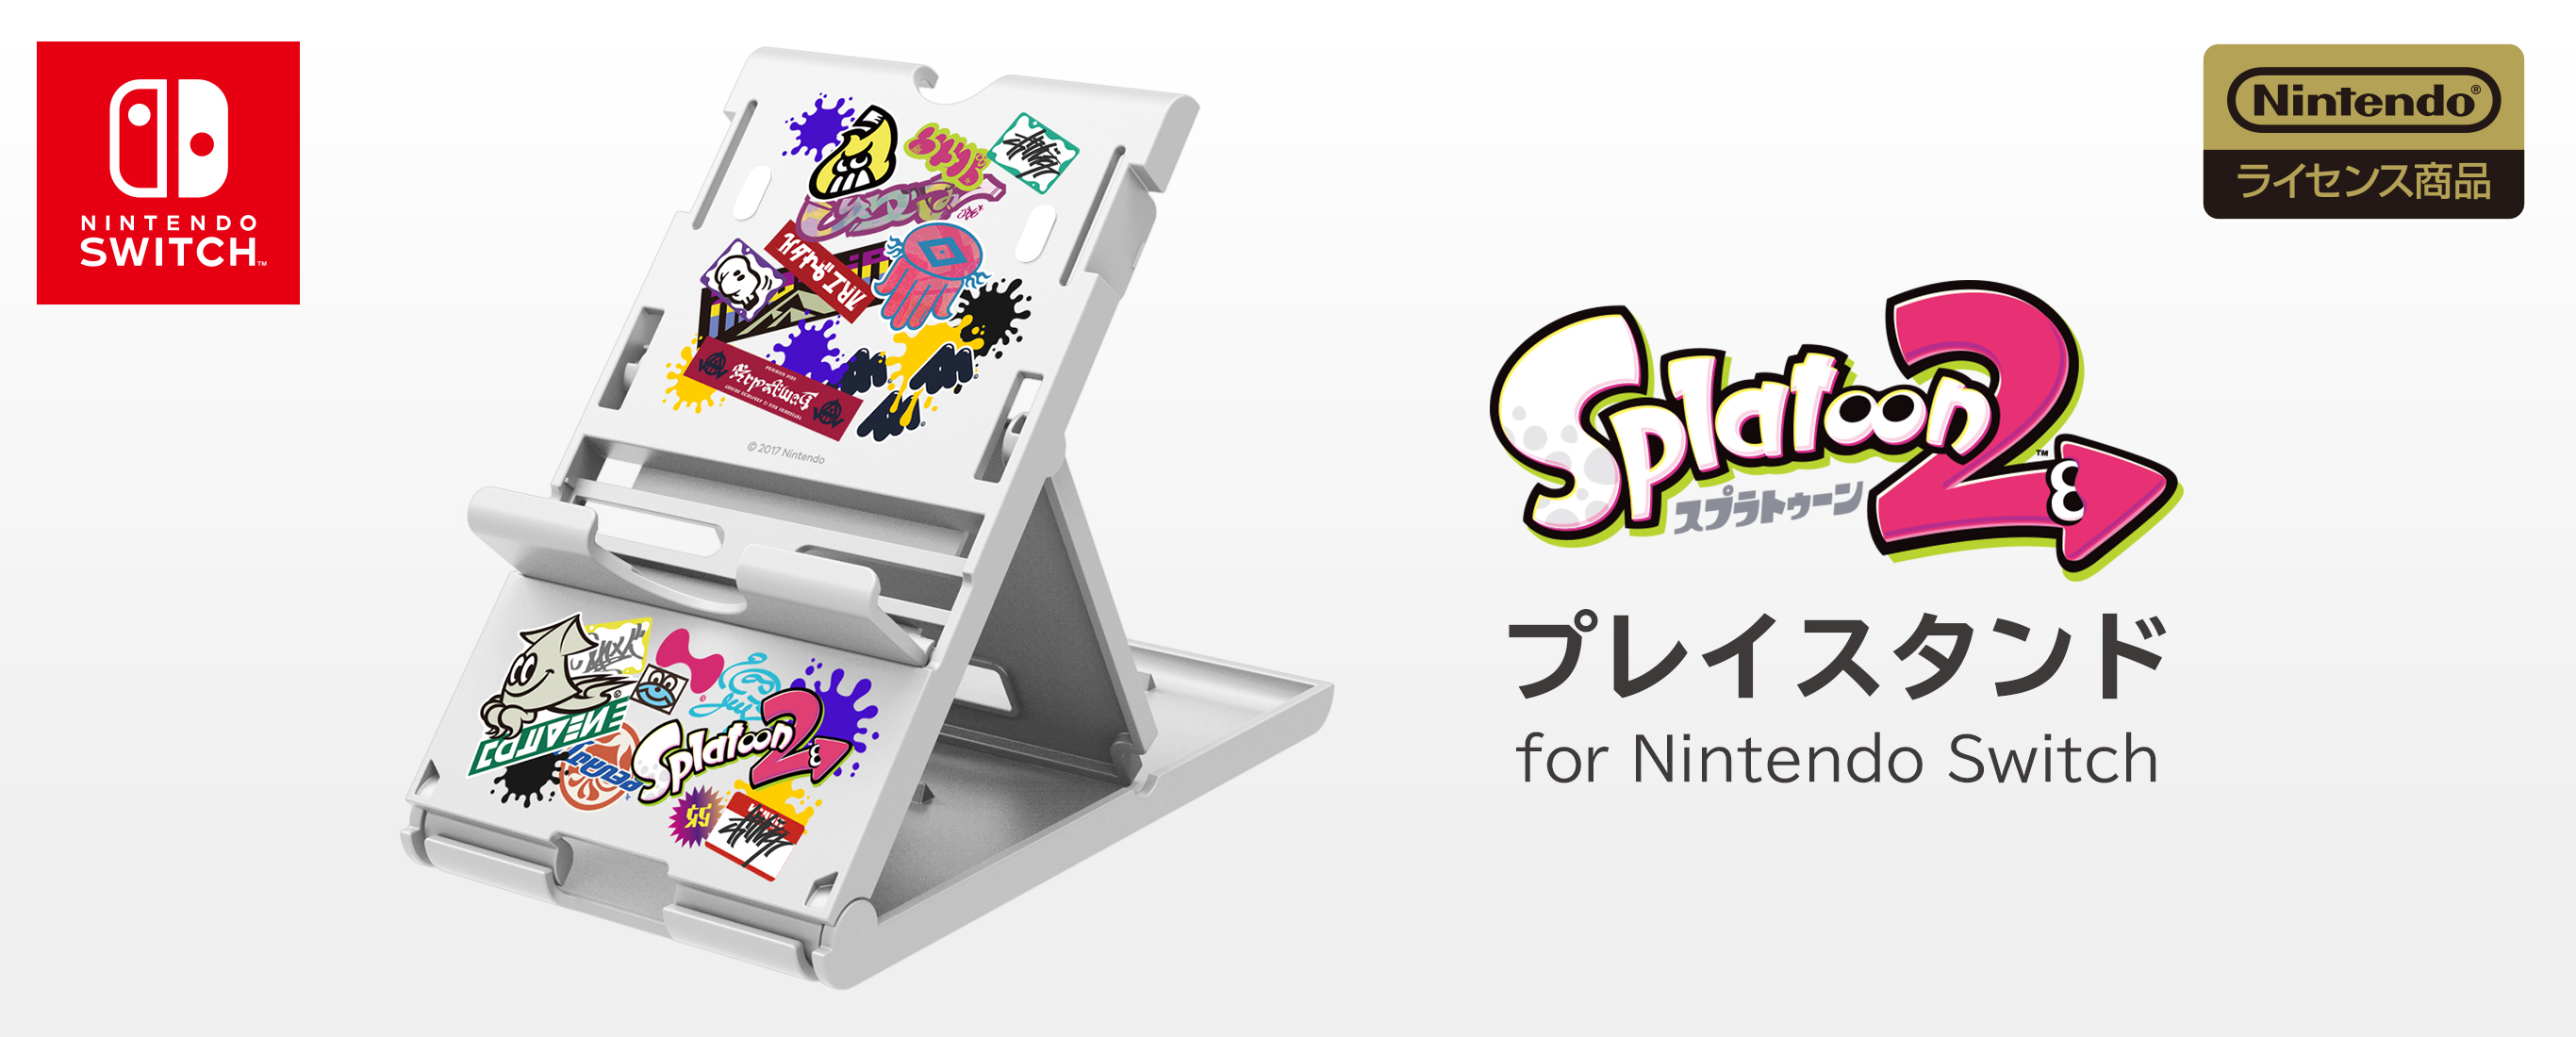 株式会社 HORI | プレイスタンド for Nintendo Switch Splatoon2